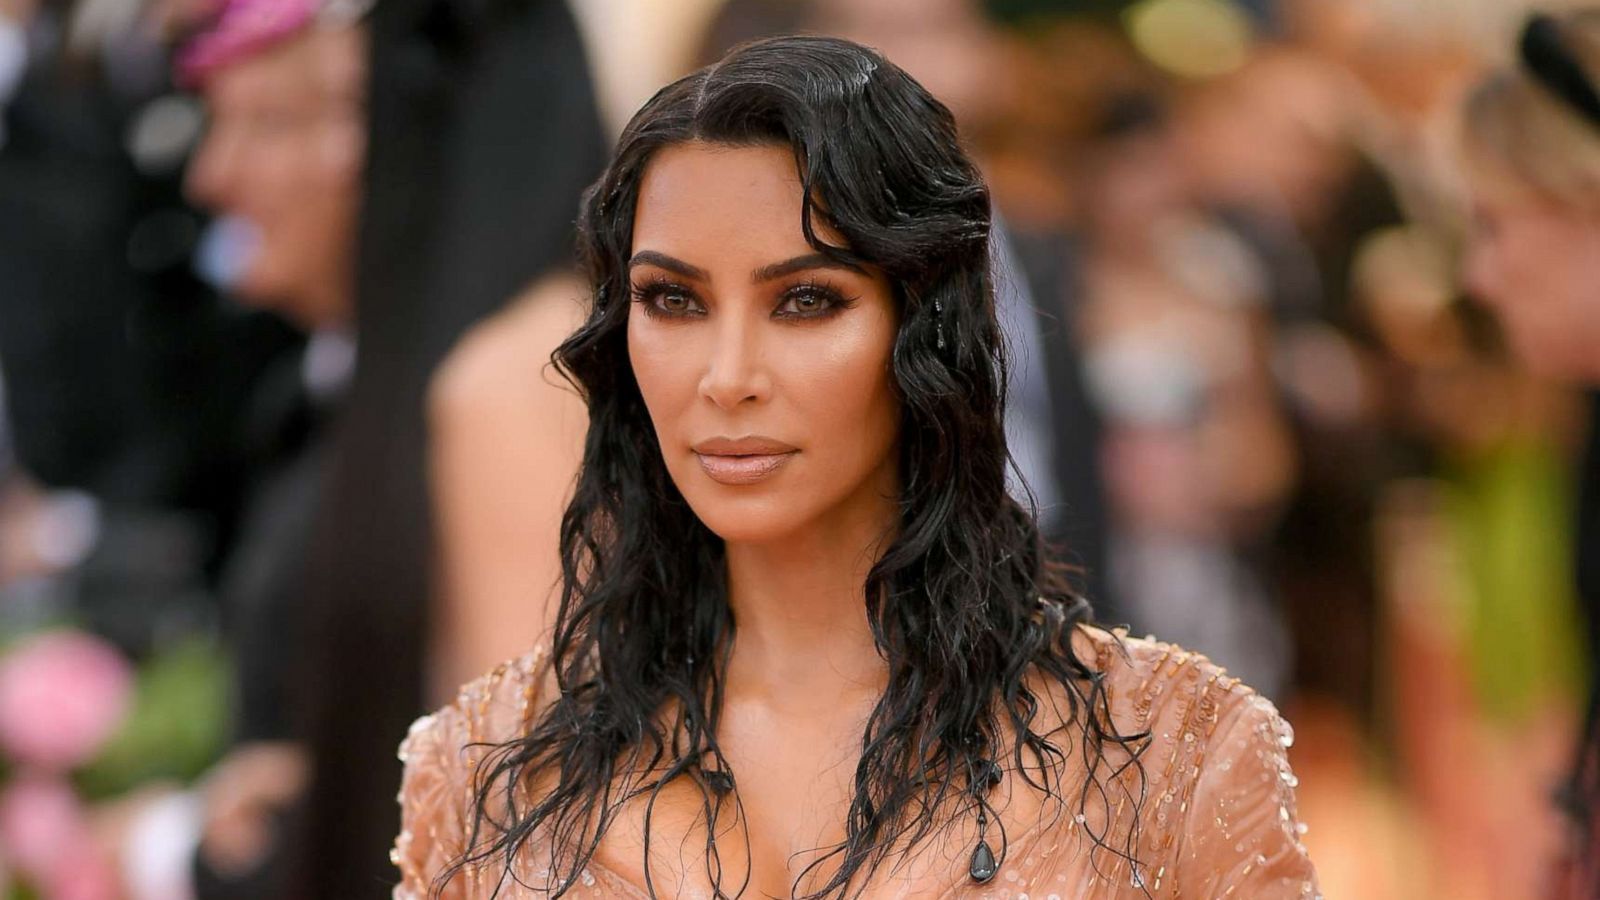 Kim Kardashian West stuns in Mugler 'Iconic Wet Look' at 2019 Met